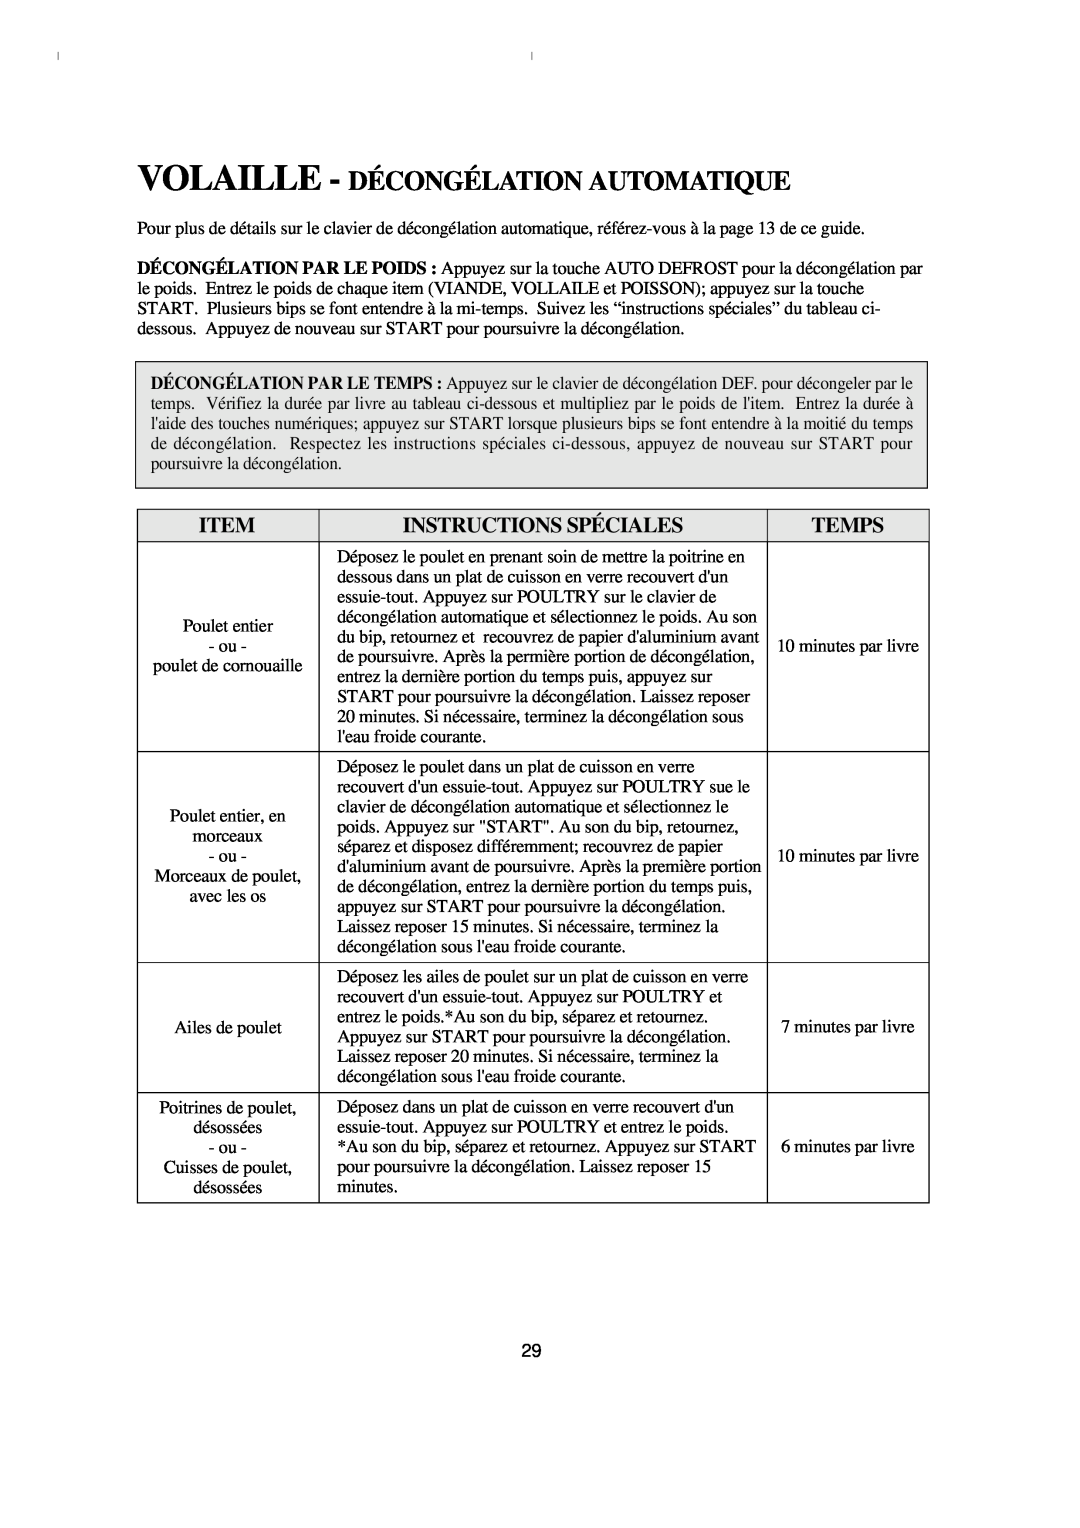 Emerson MW8993WC/BC owner manual Volaille - Décongélation Automatique, Instructions Spéciales, Temps 